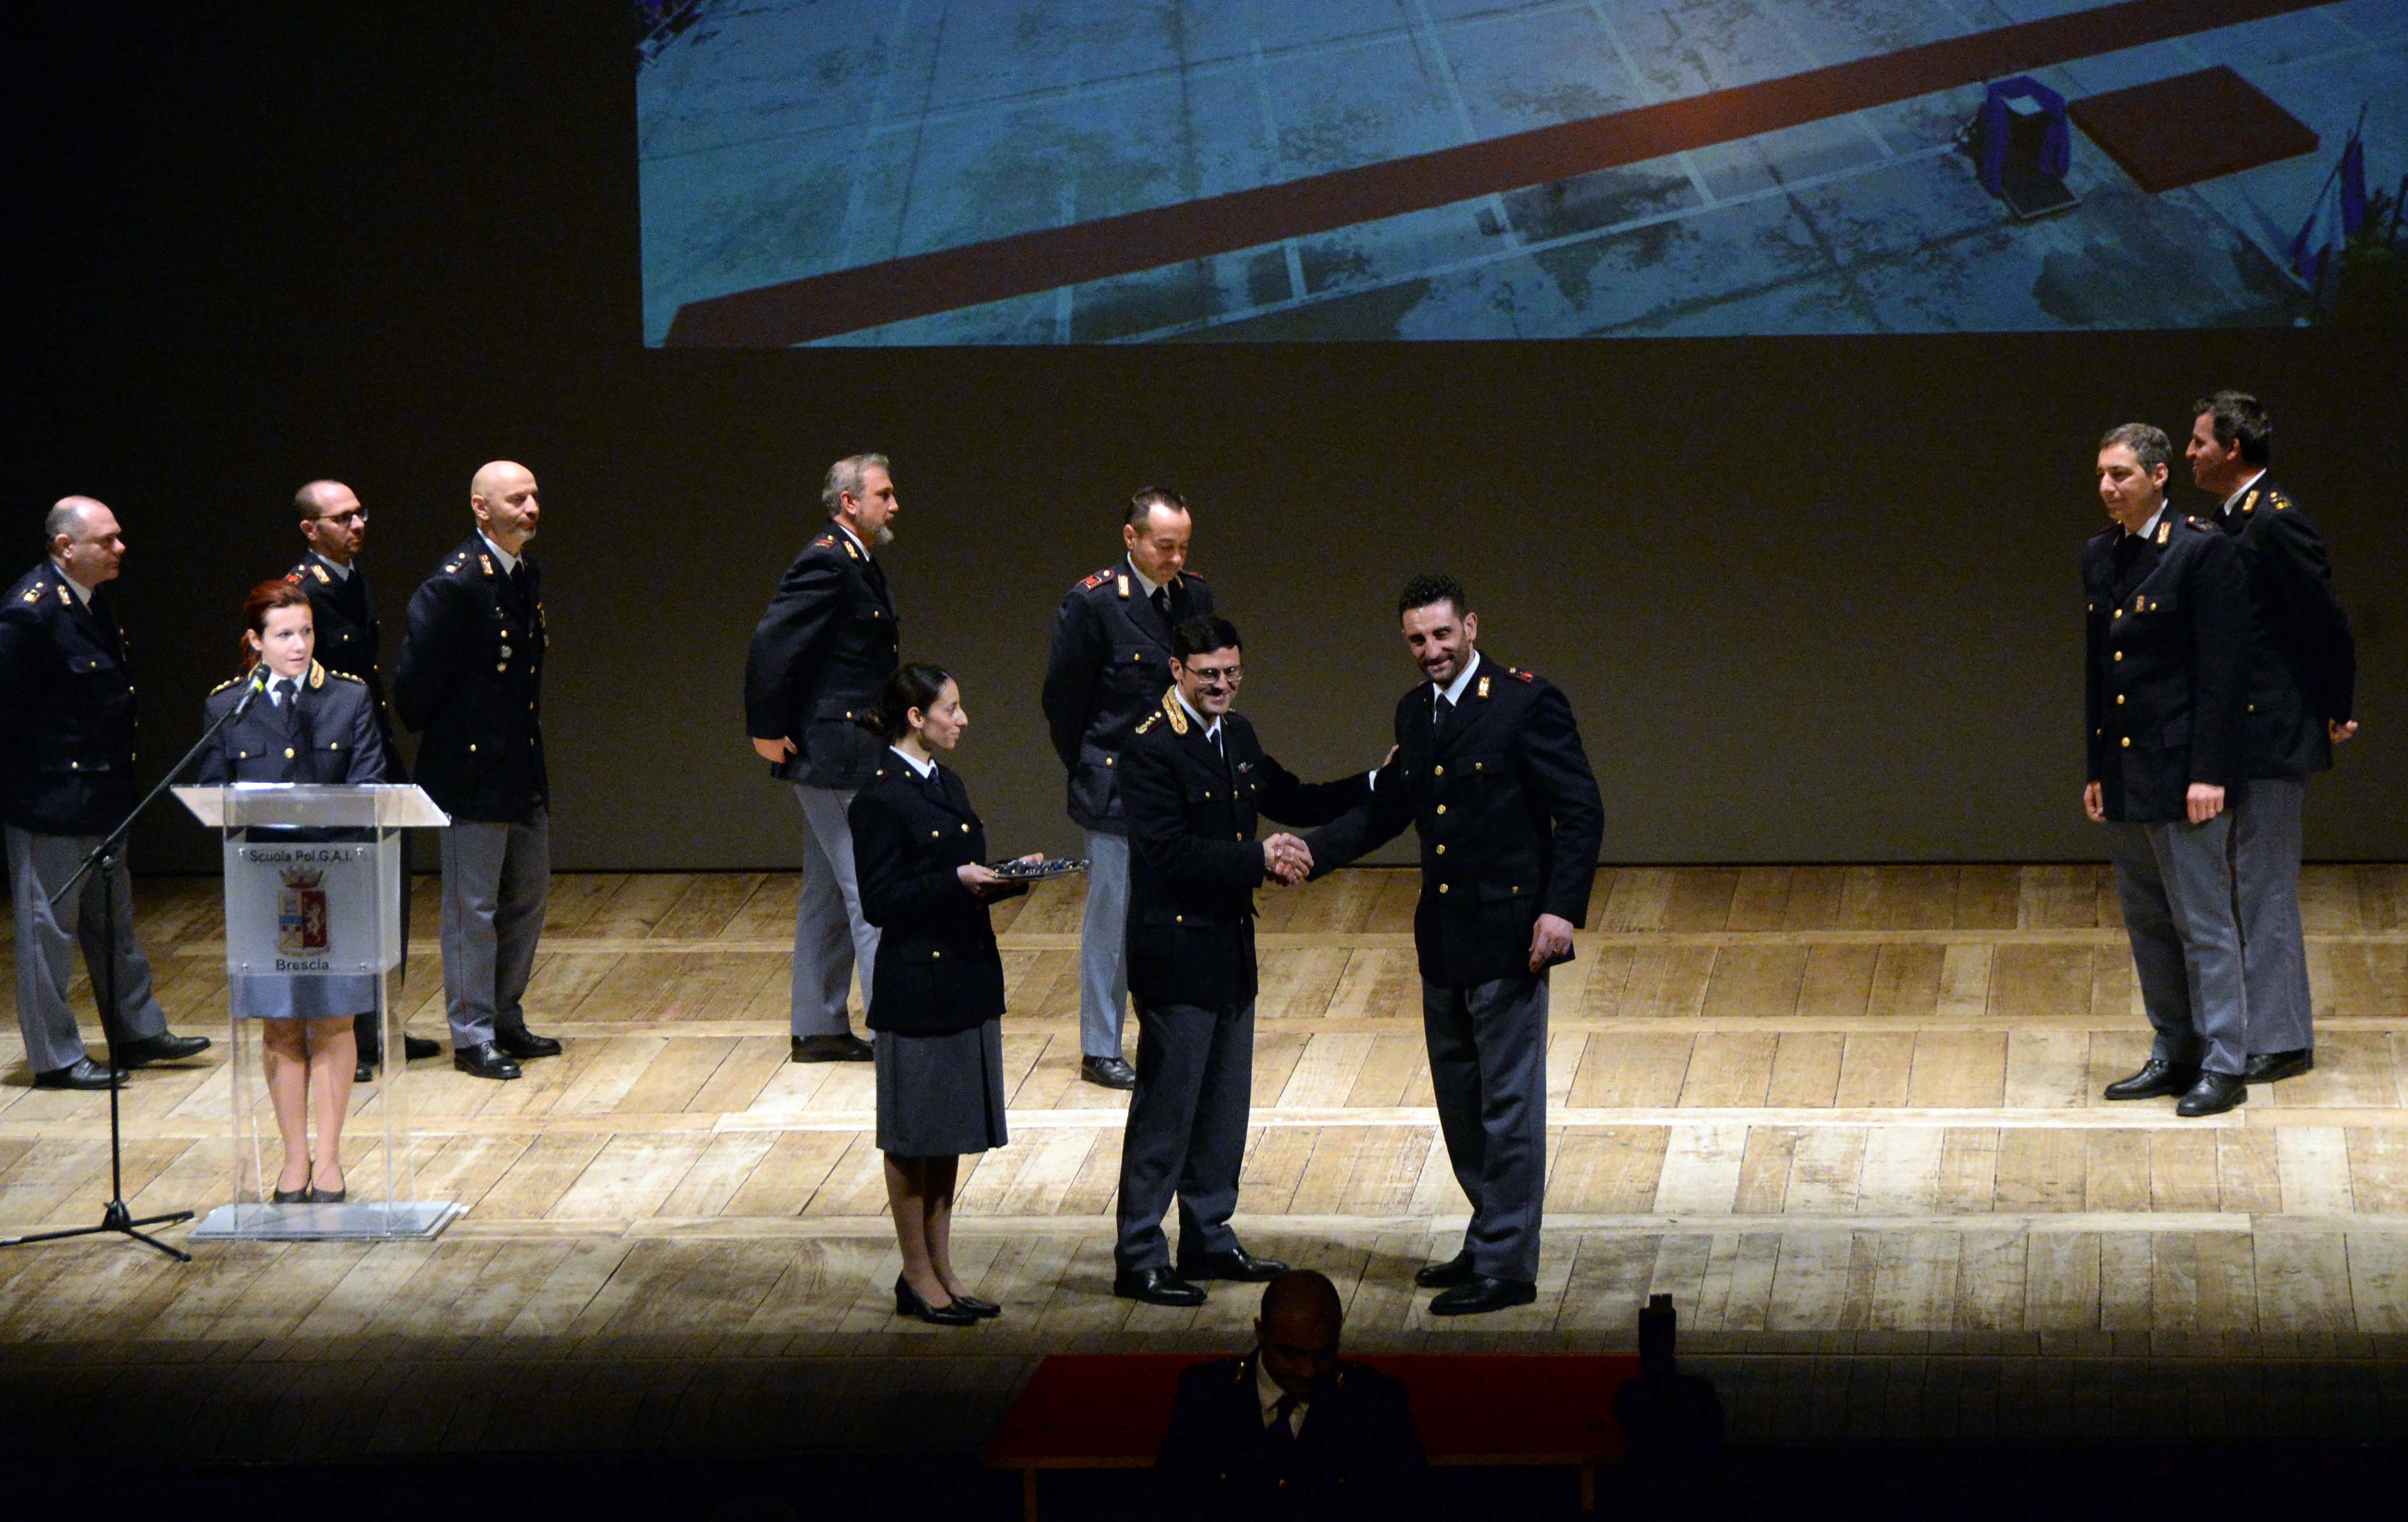 Teatro Grande di Brescia Cerimonia conclusiva del 9° Corso di Formazione per Vice Ispettori della Polizia di Stato